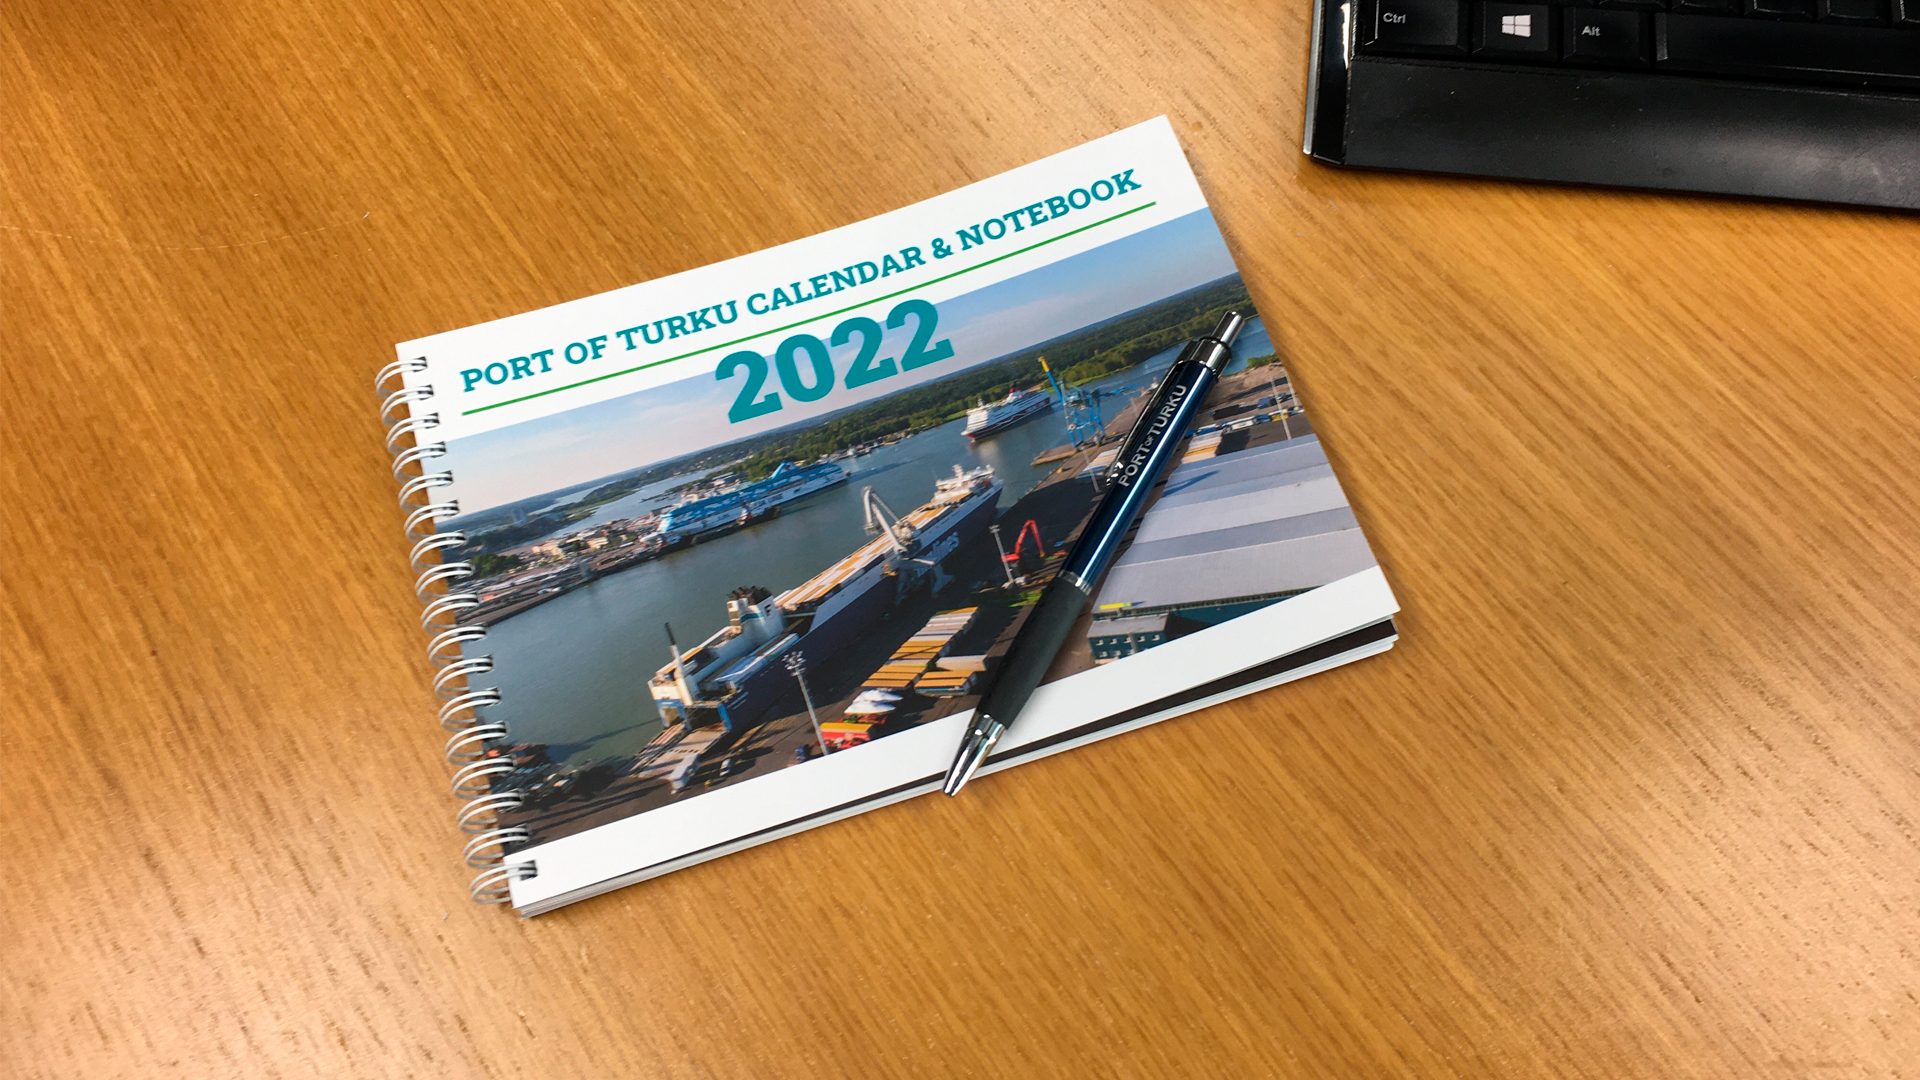 Port of Turku calendar 2022 has been published – Port of Turku